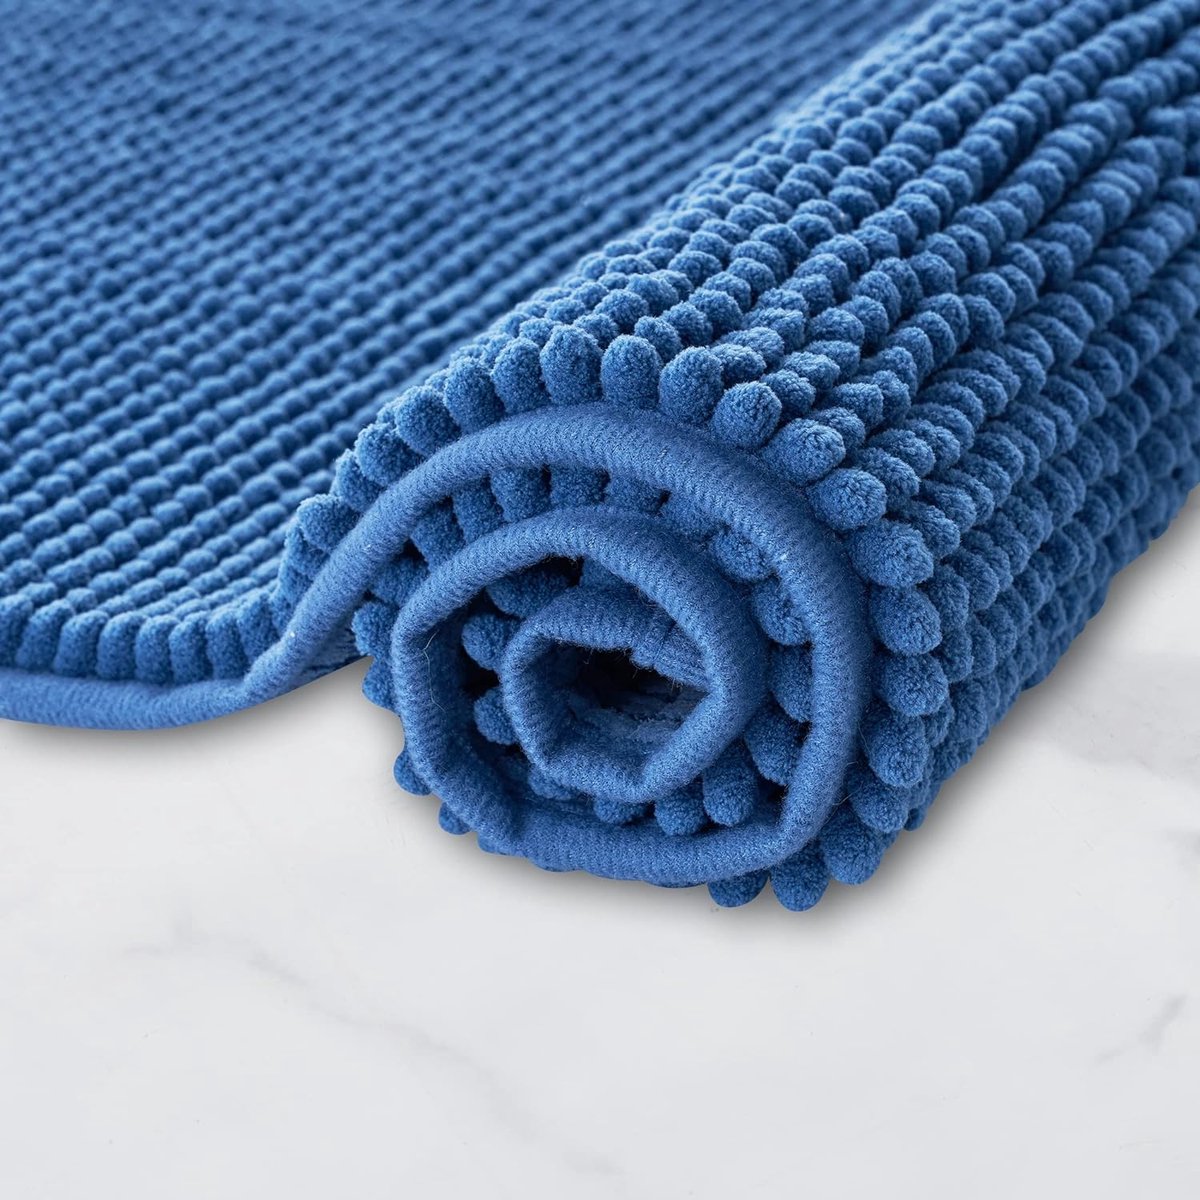 Badmat Anti-Slip av soft Chenille | Super absorberend en machinewasbaar | Te combineren als badmat set | Voor de badkamer, douche, bad of als WC mat | Blauw - 45x45 cm WC